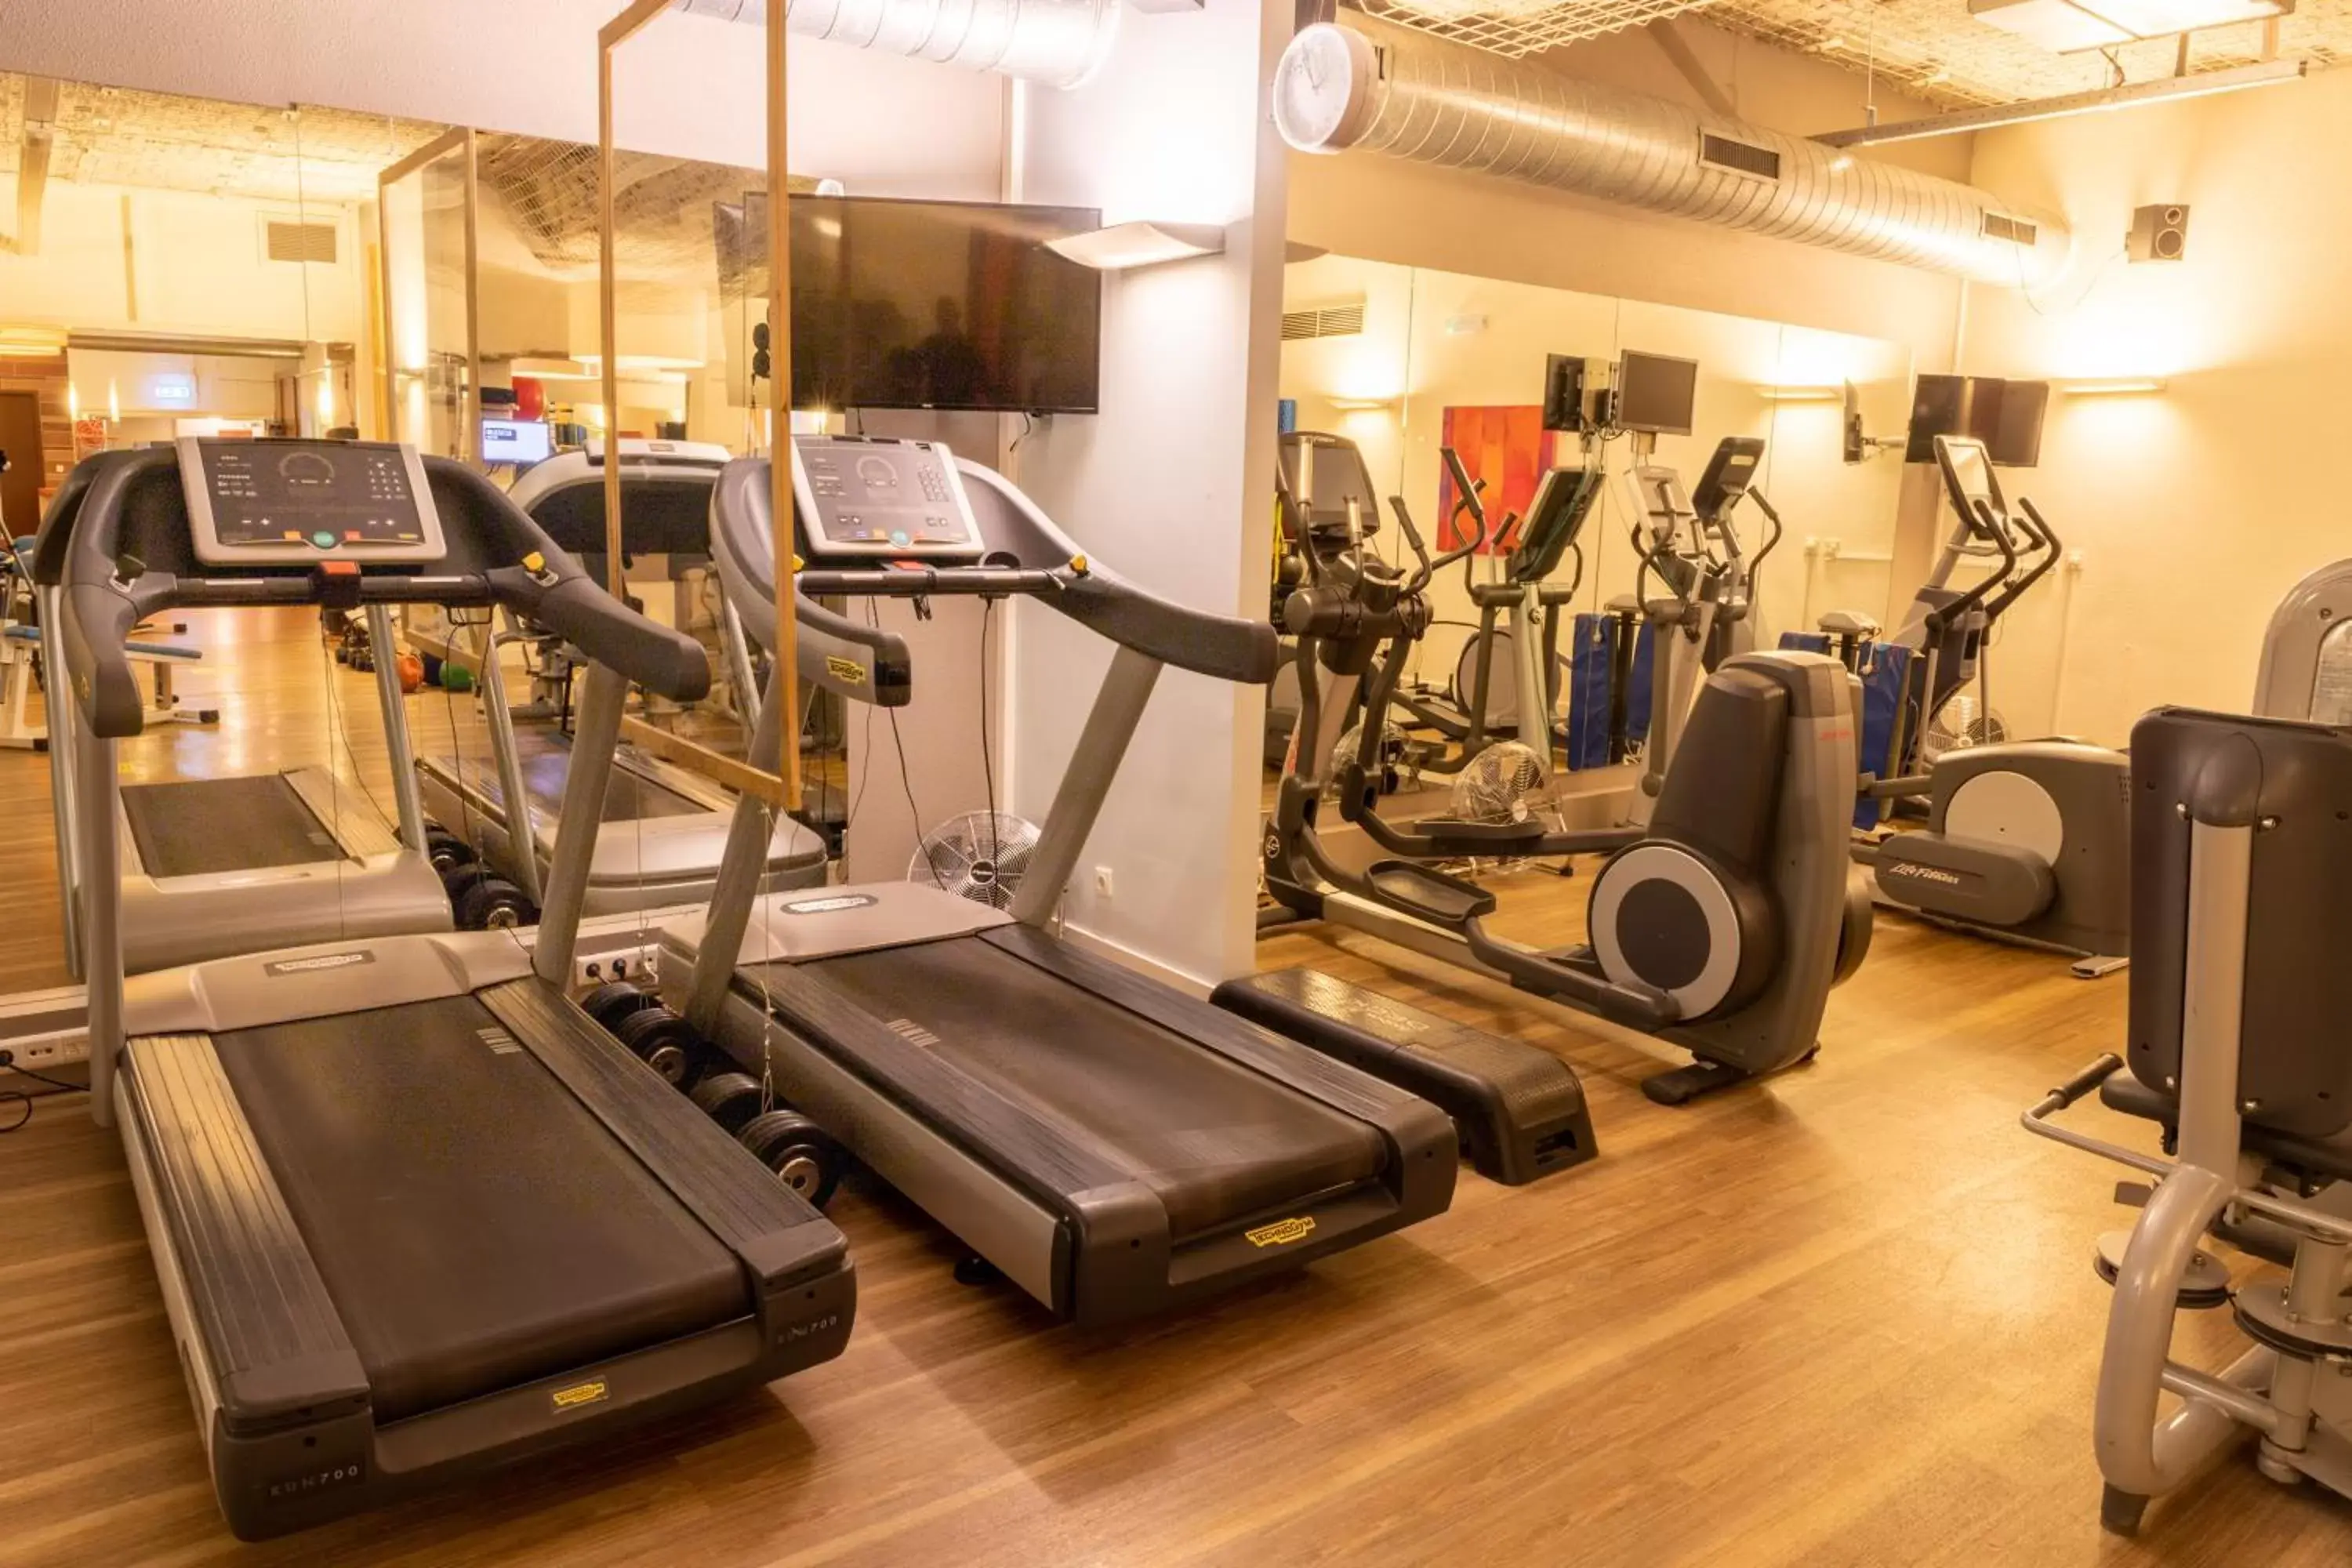 Fitness centre/facilities, Fitness Center/Facilities in Novotel Den Haag World Forum